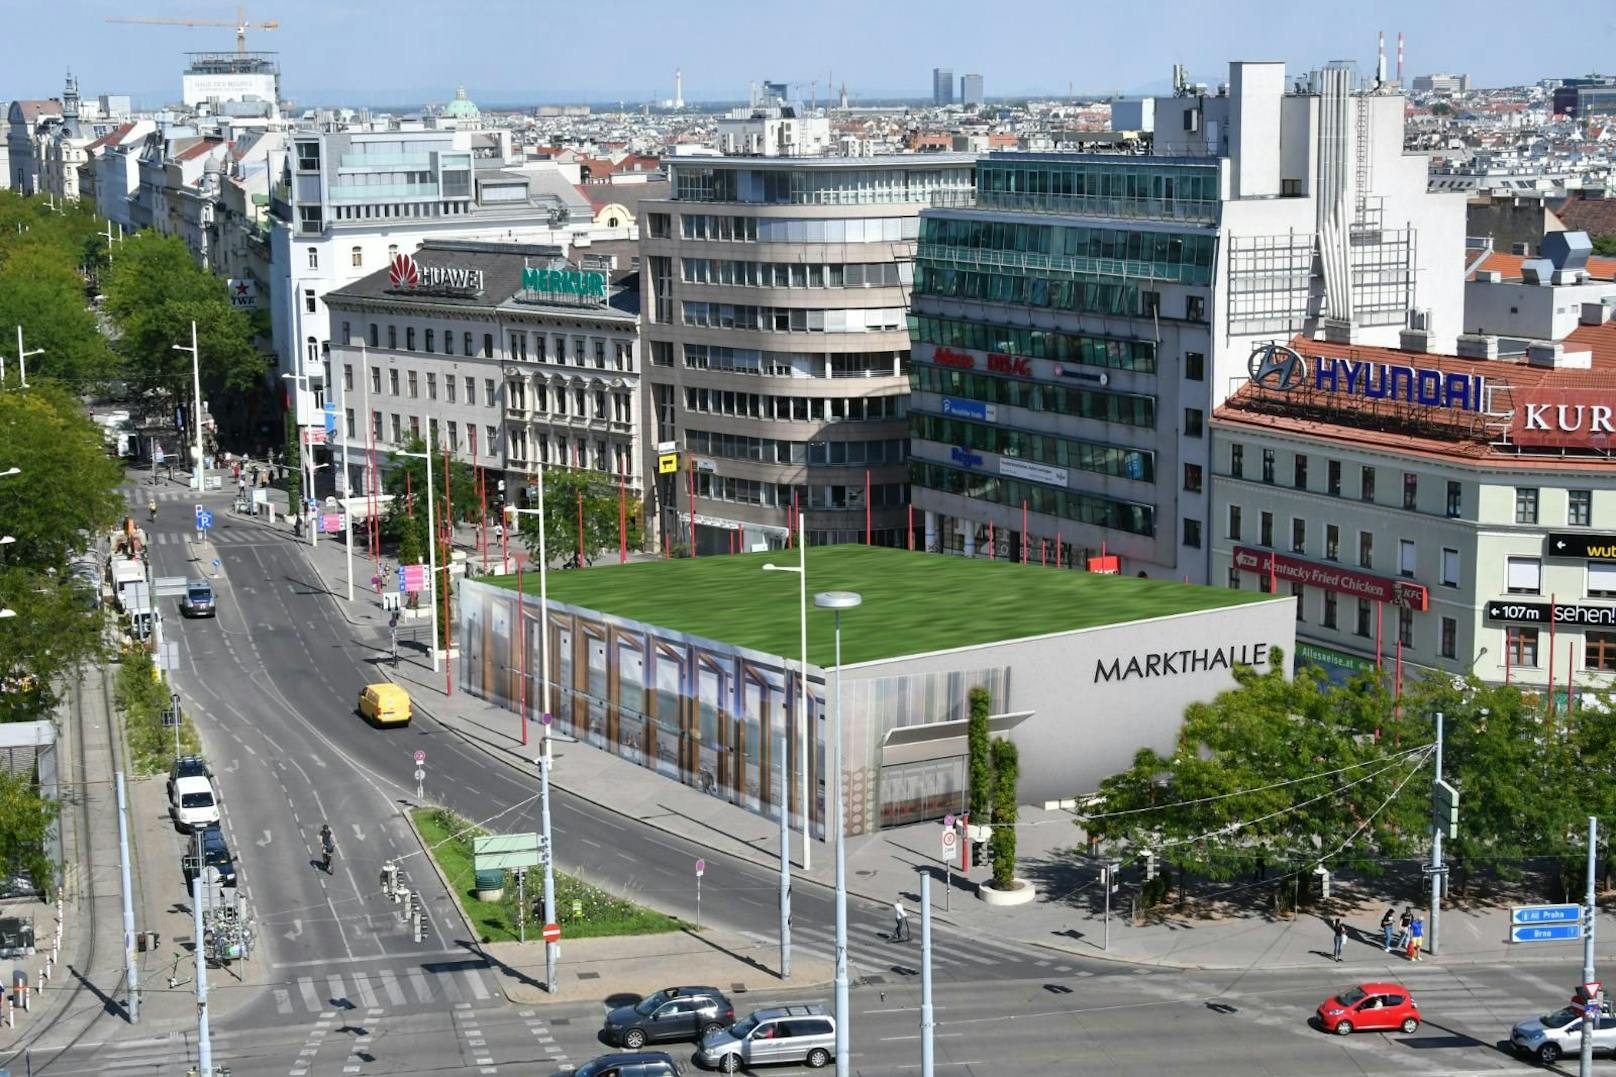 Im Streit um die Errichtung einer Markthalle am Naschmarkt schlägt die FPÖ Wien nun einen alternativen Standort vor: Der Christian Broda-Platz am Ende der "MaHü". So könnte diese aussehen.